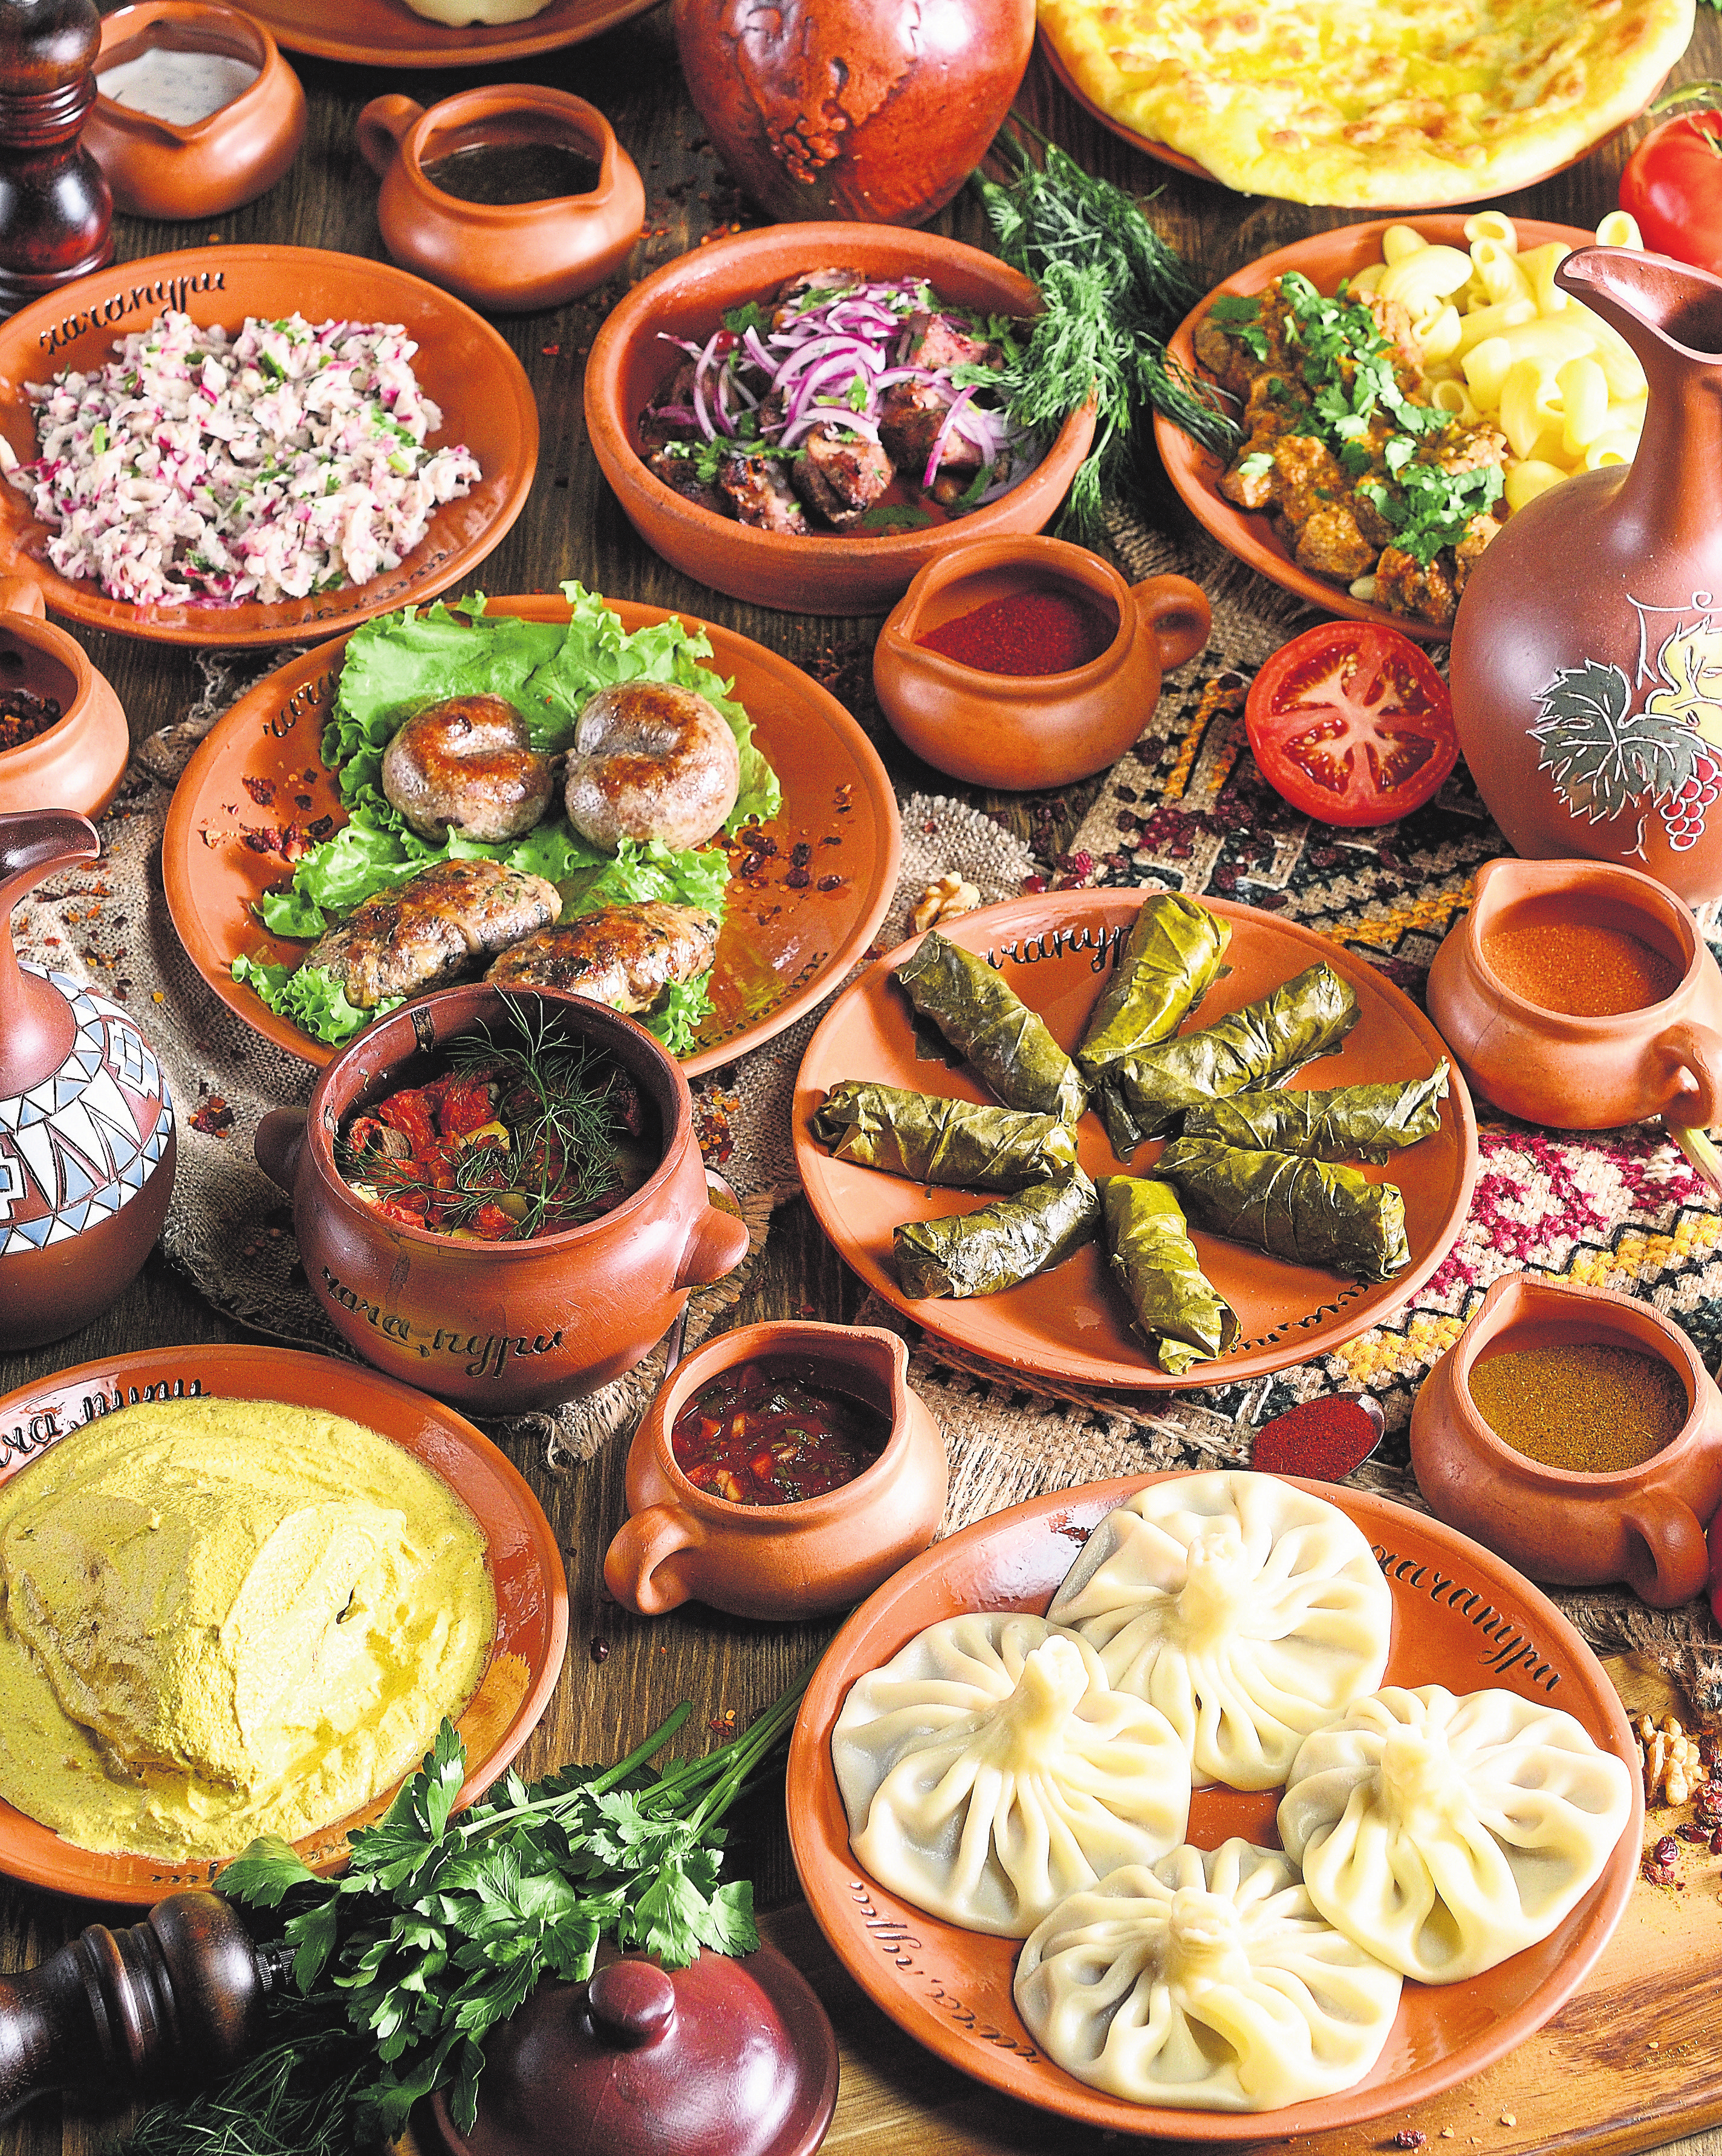 La cuisine libanaise a aussi l'avantage de satisfaire les végétariens, tant au niveau nutritionnel des aliments que pour leurs saveurs...